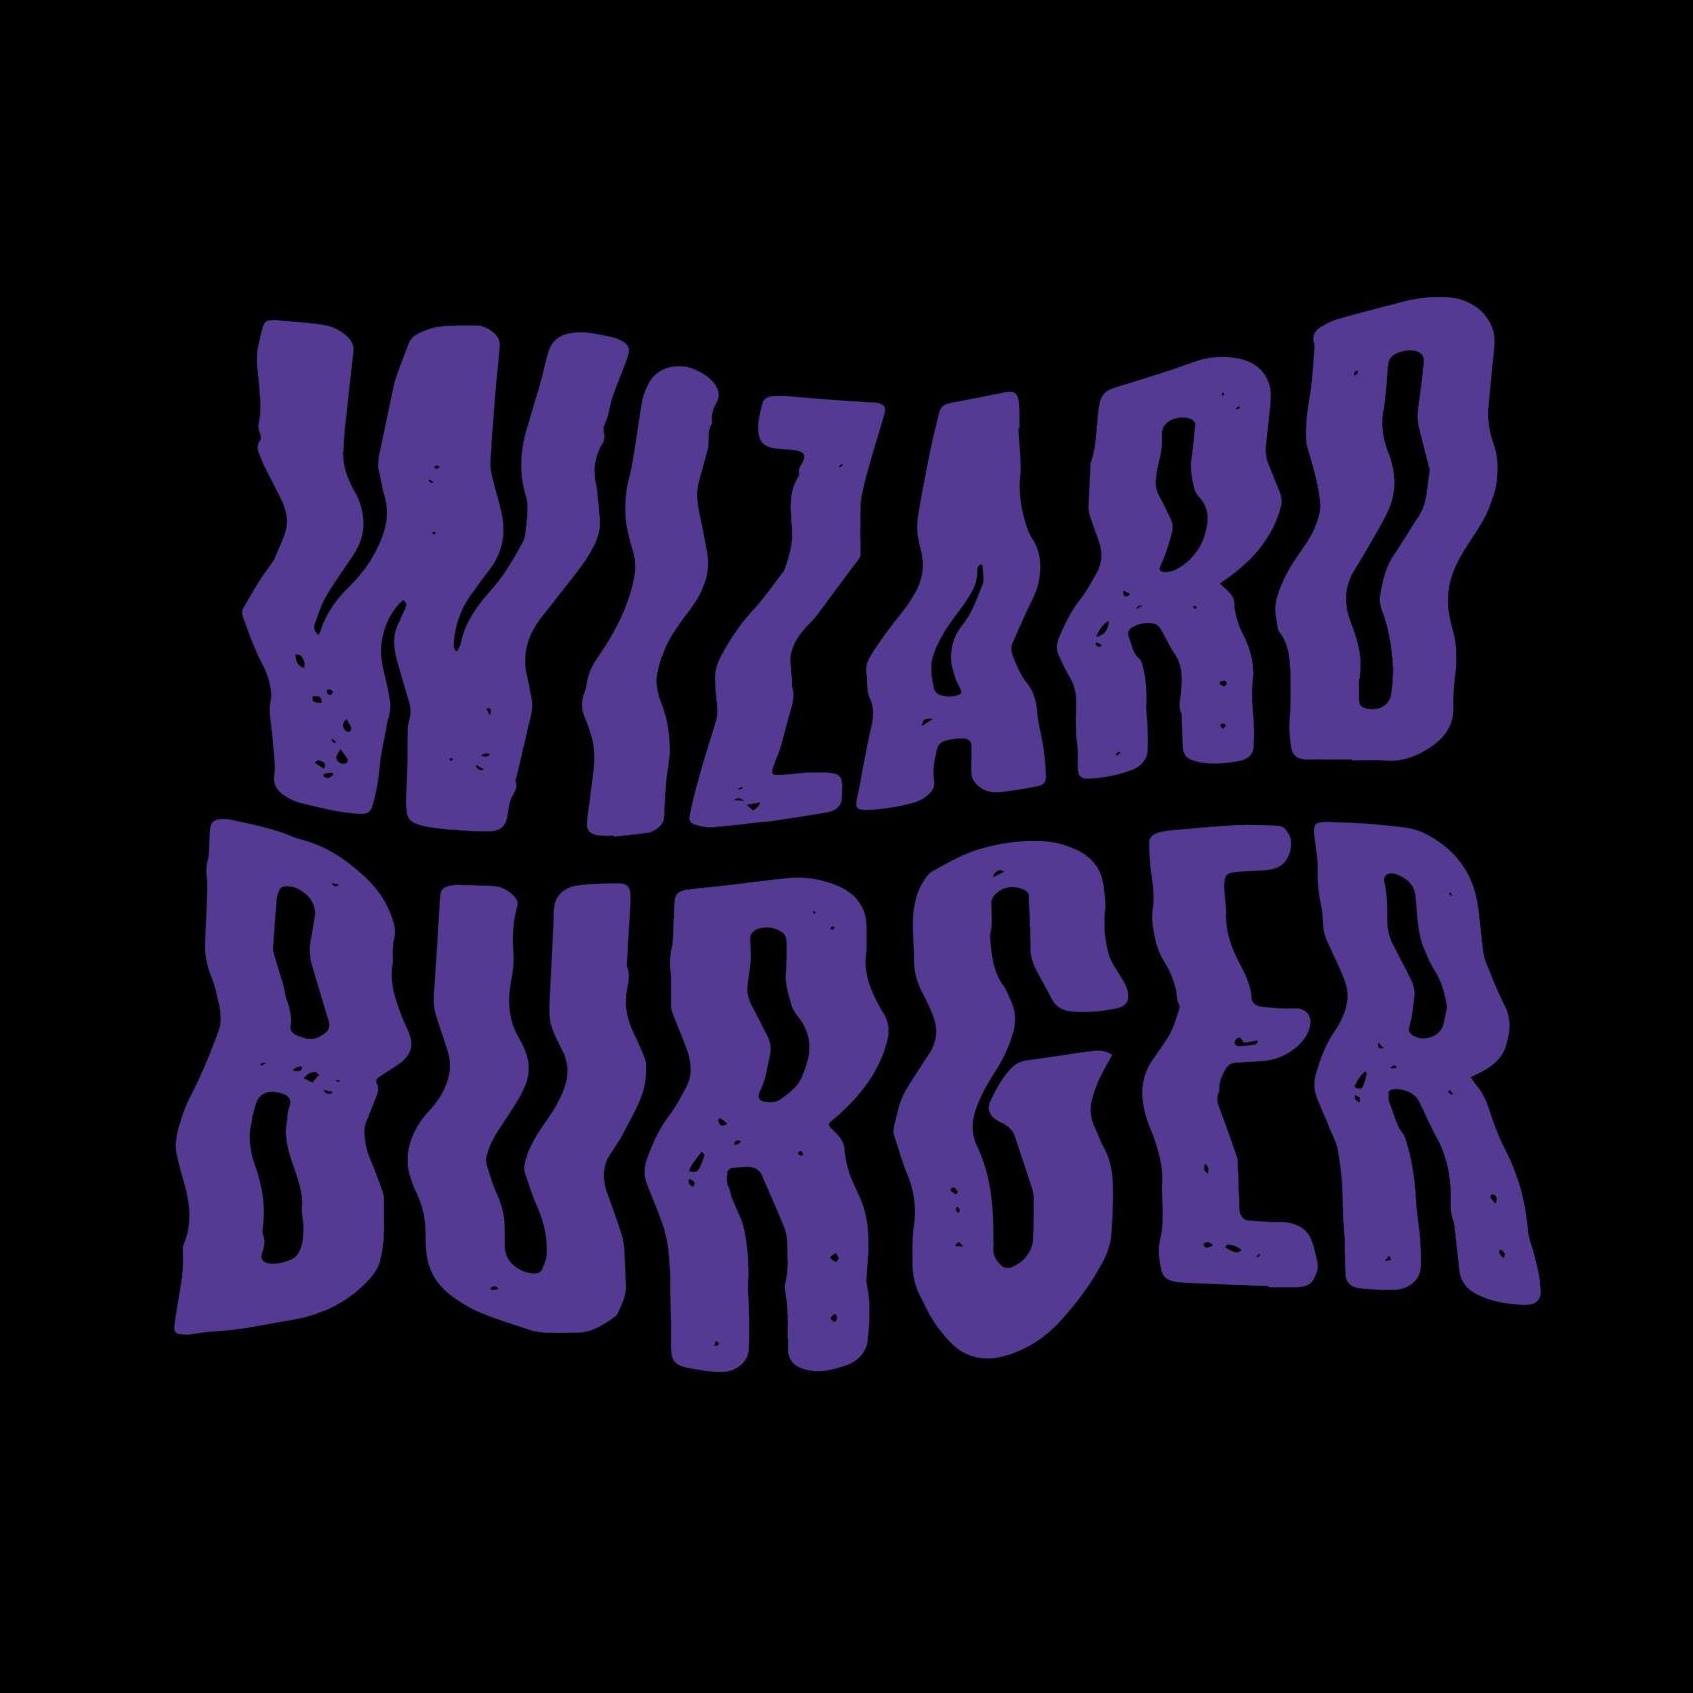 Wizard Burger